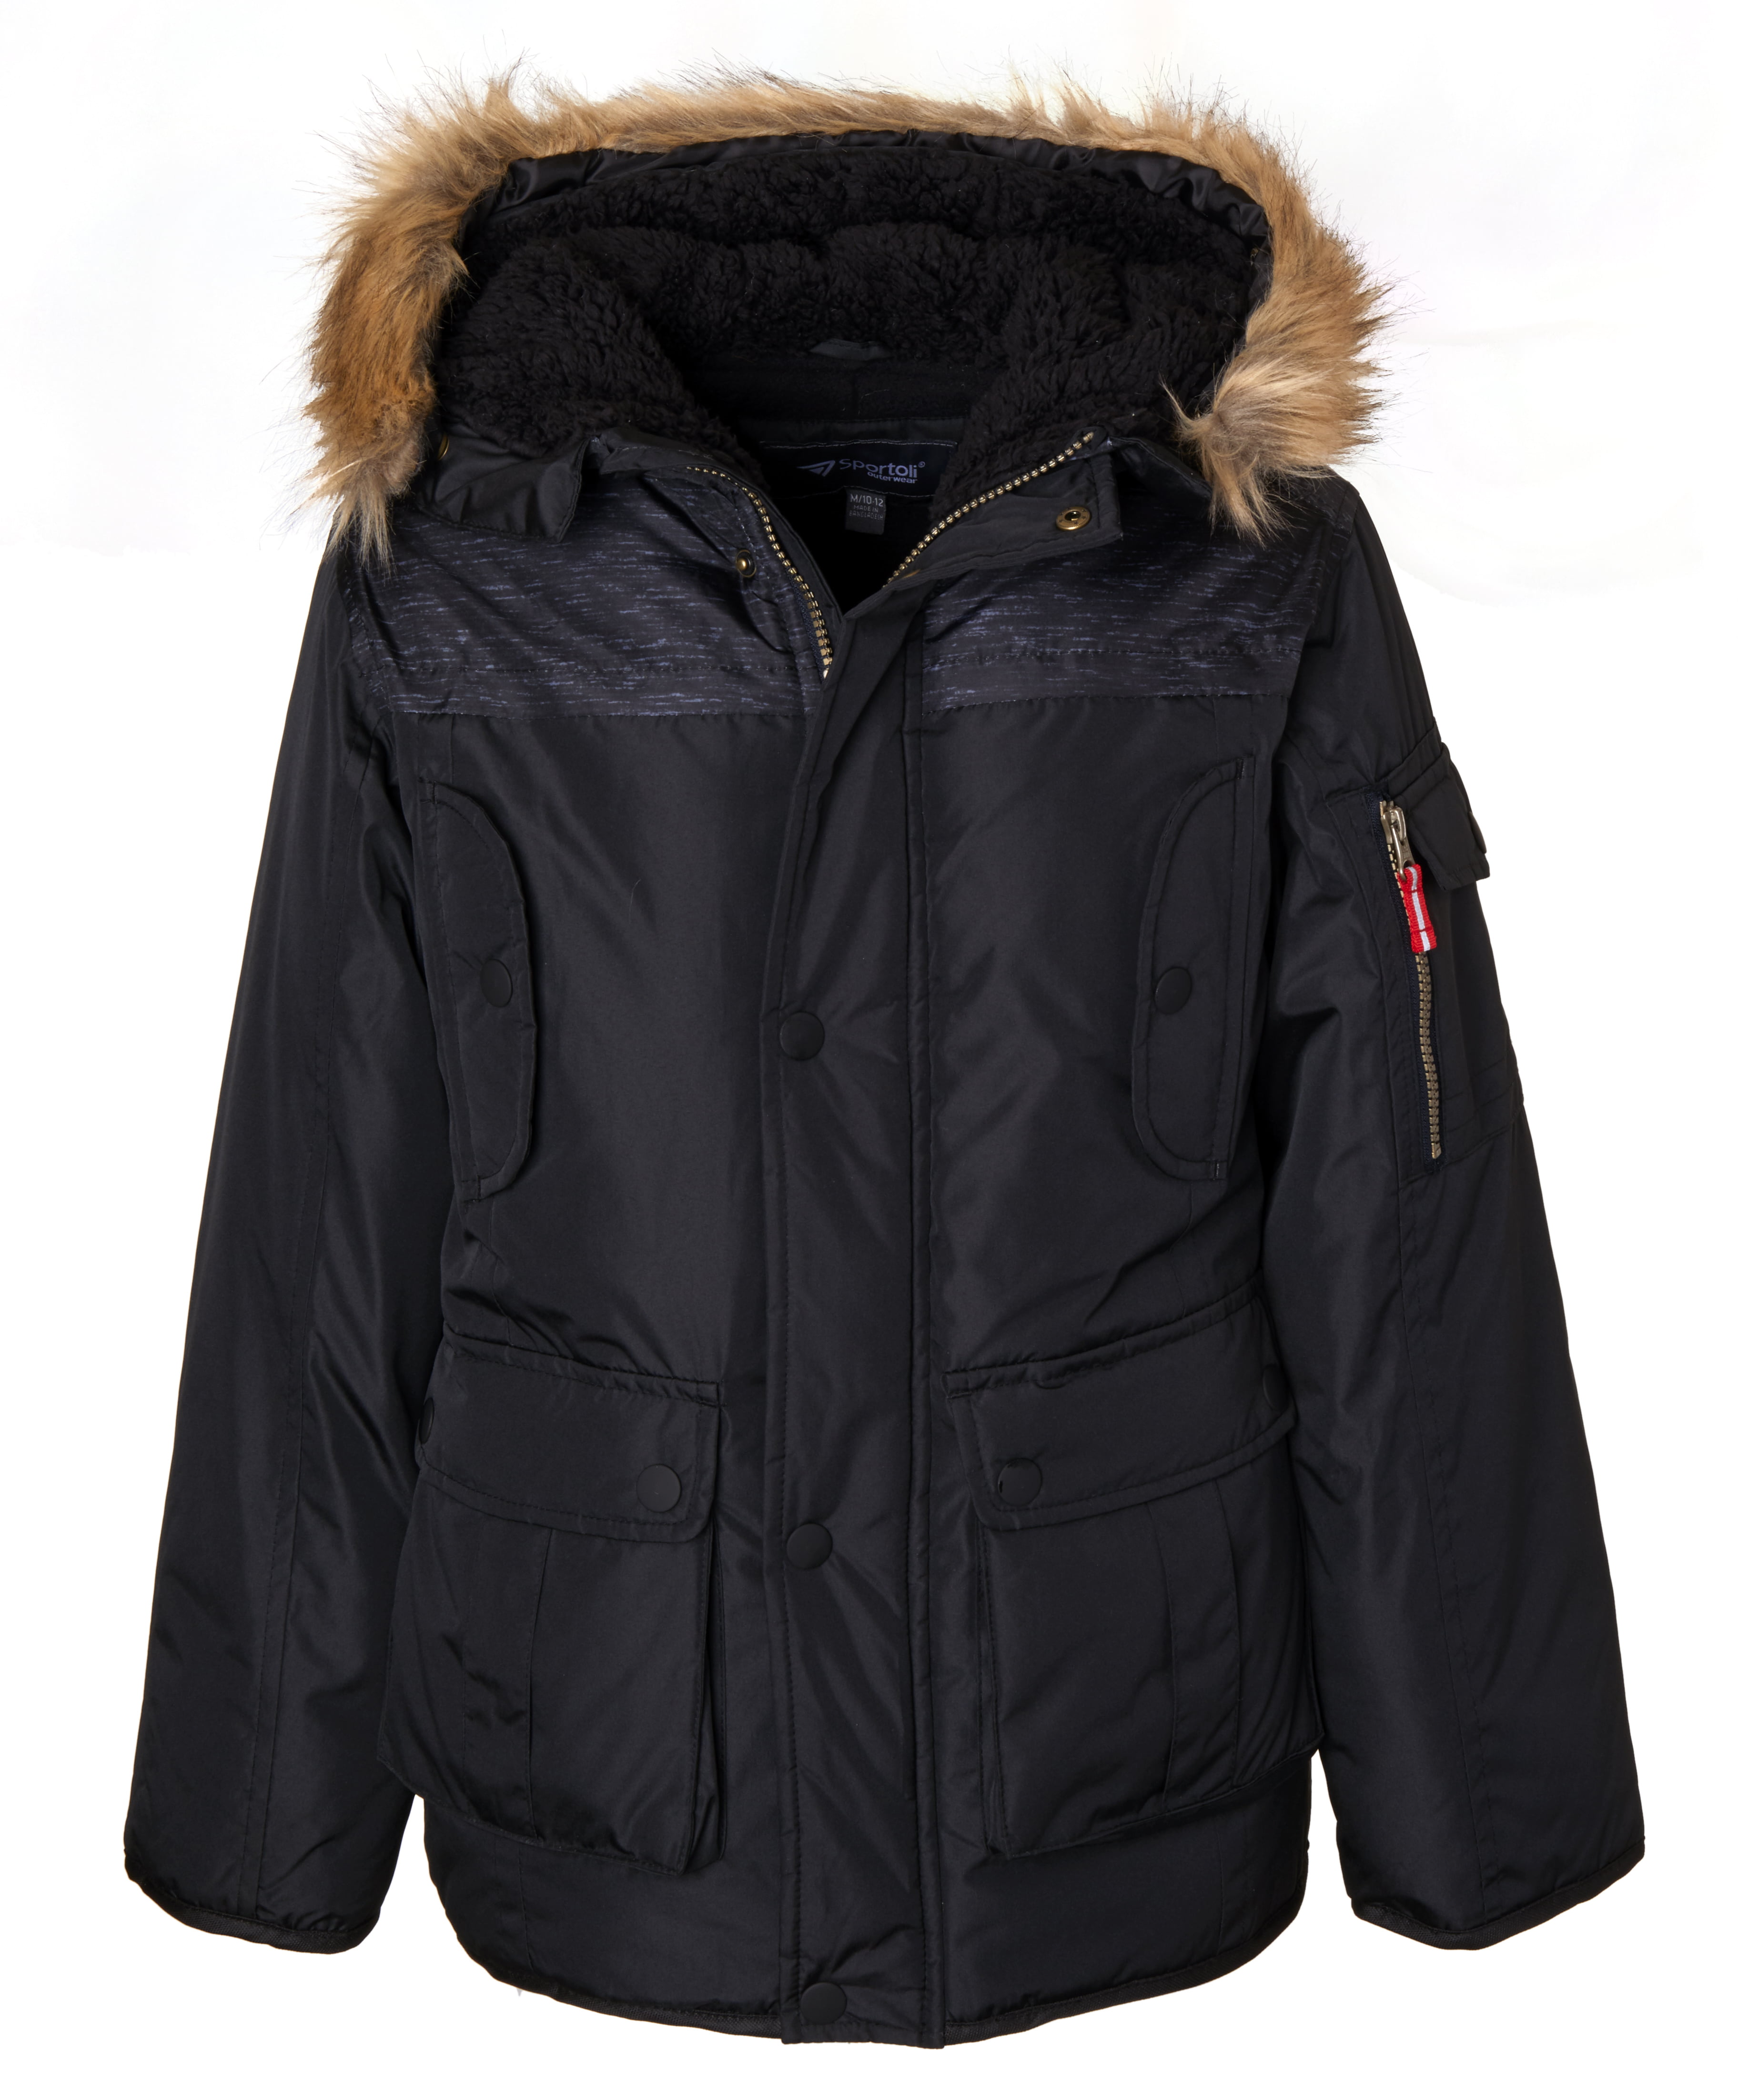 Sportoli - Sportoli Boys’ Heavy Fleece Lined Winter Puffer Parka Coat ...